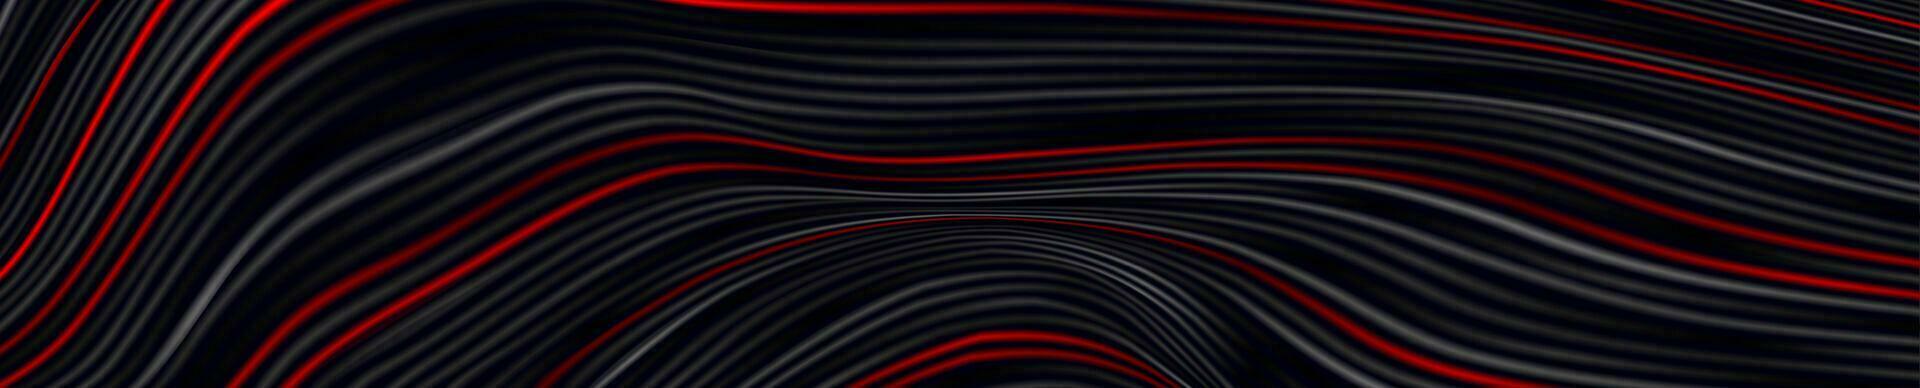 negro rojo curvo suave ondulado líneas resumen antecedentes vector